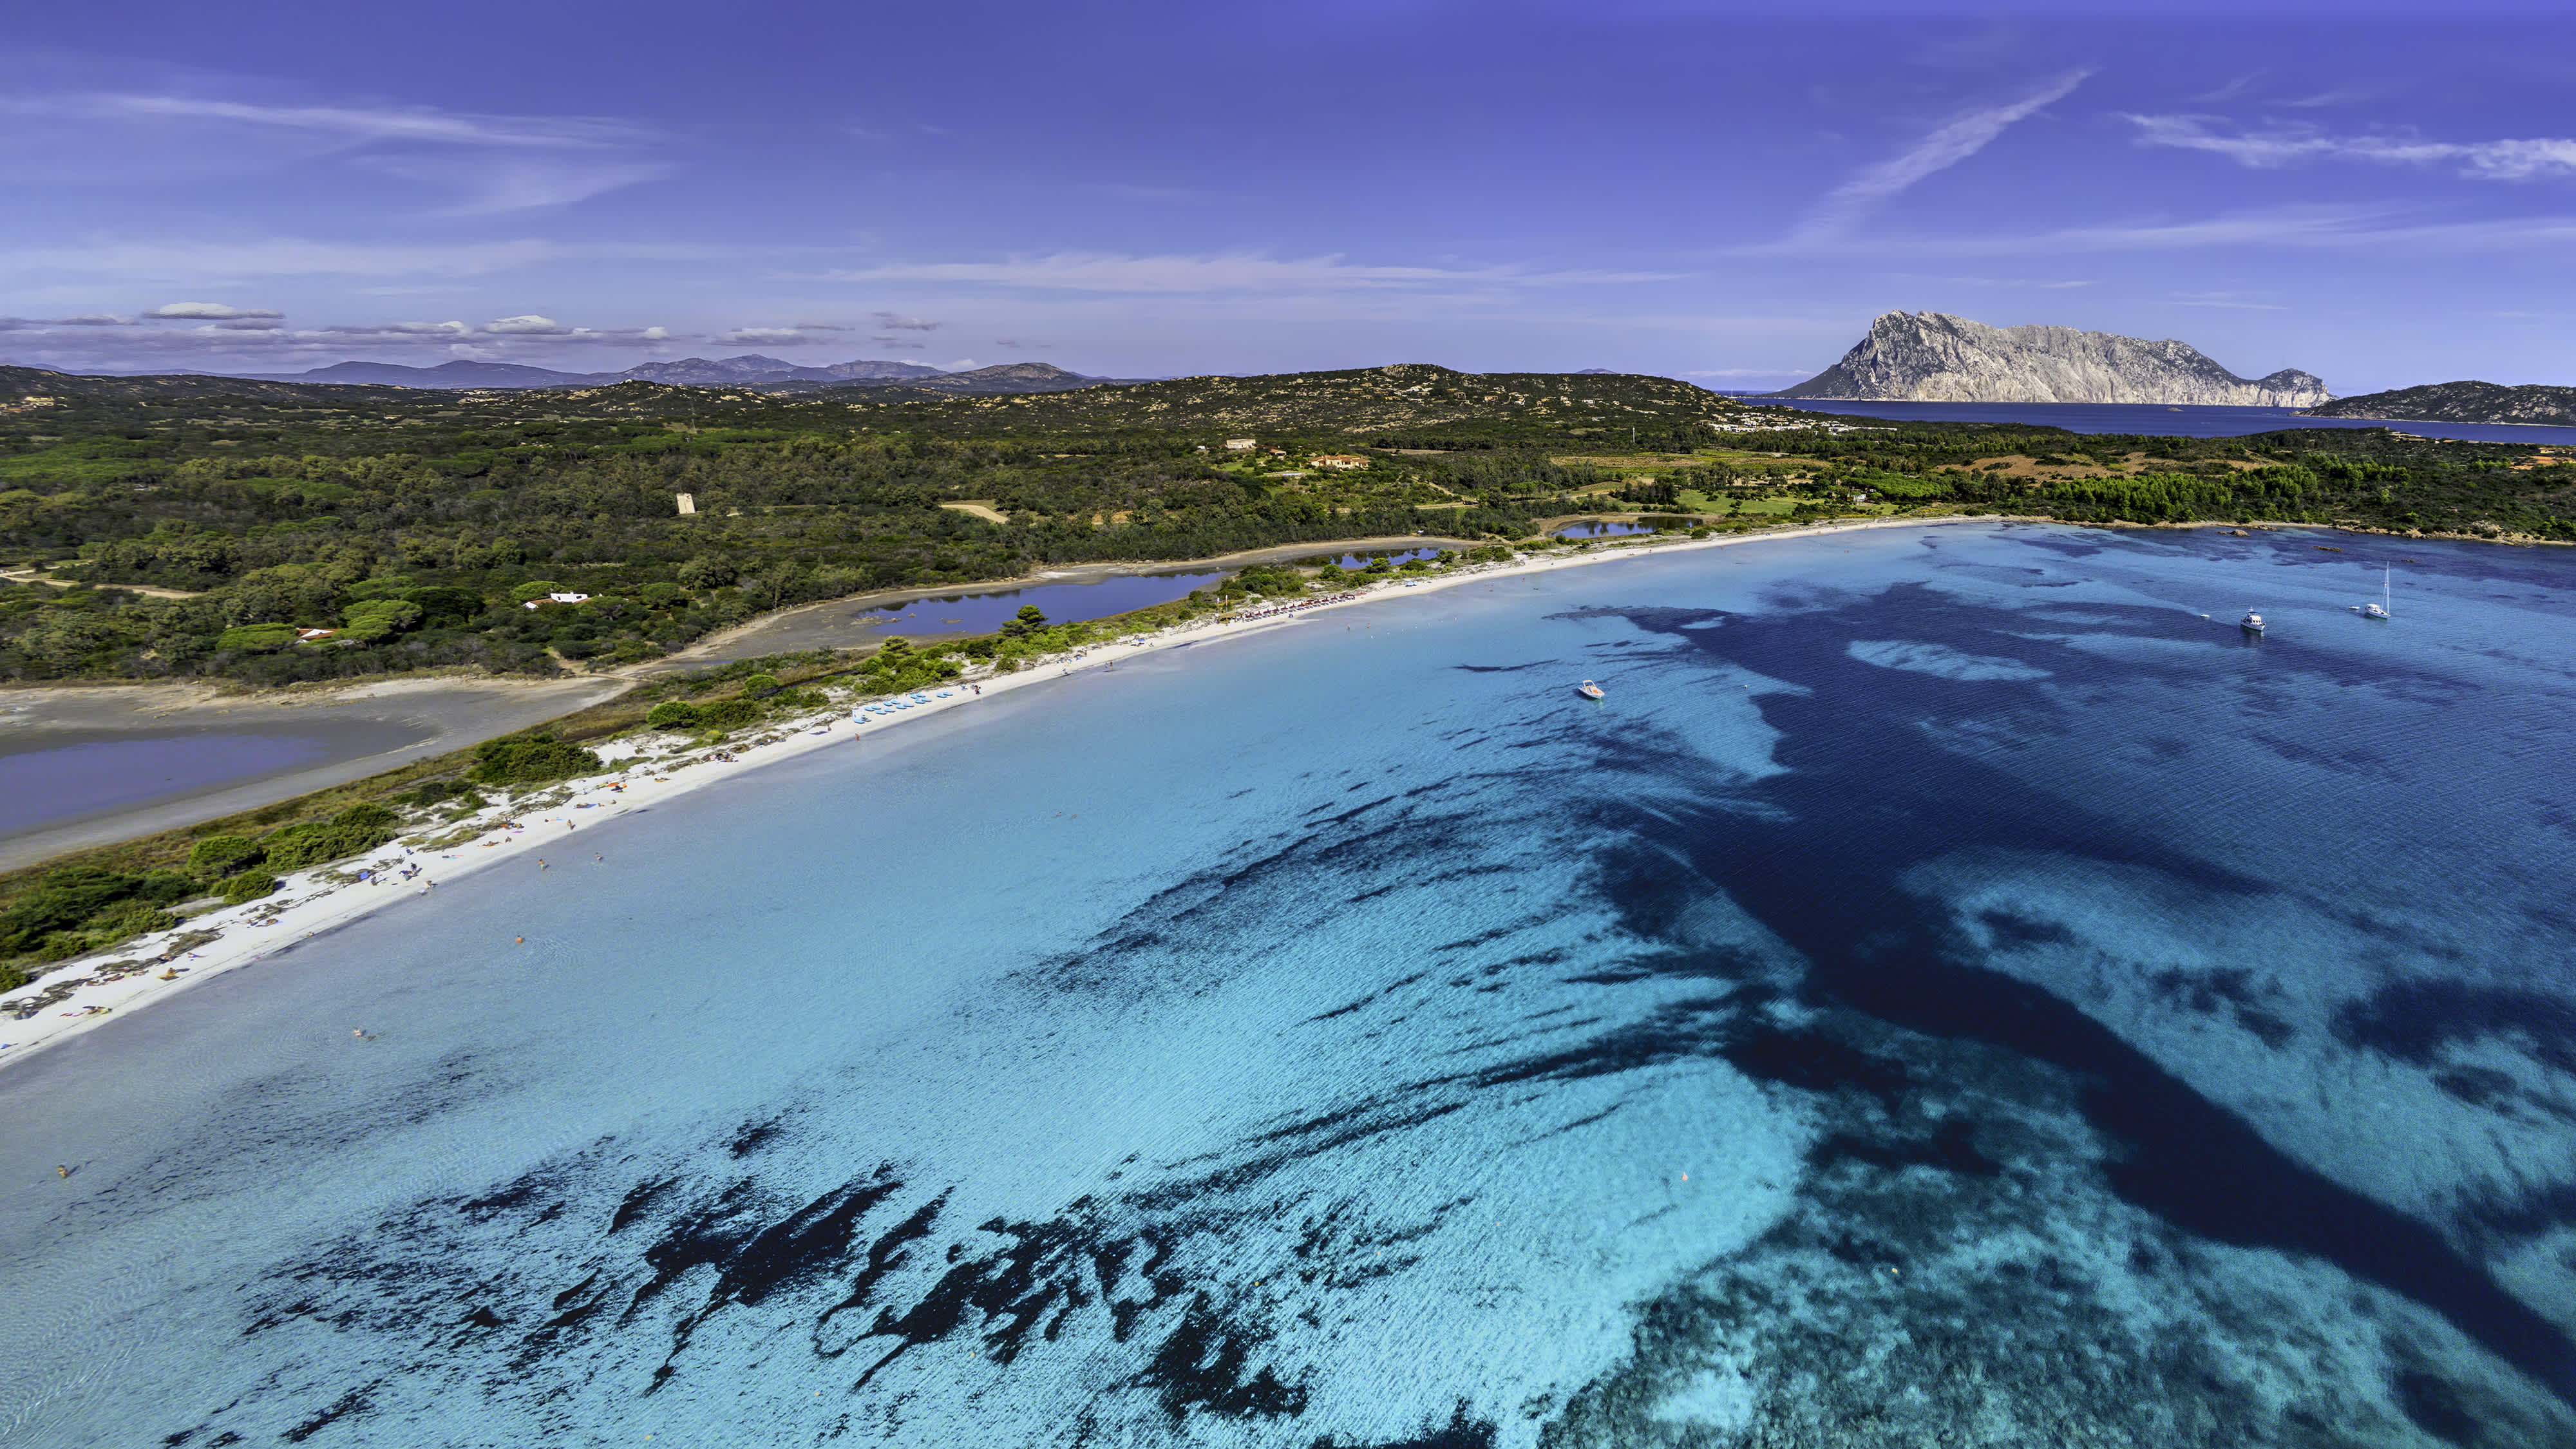 Luftaufnahme von Cala Brandinchi in Sardinien, Italien. 

